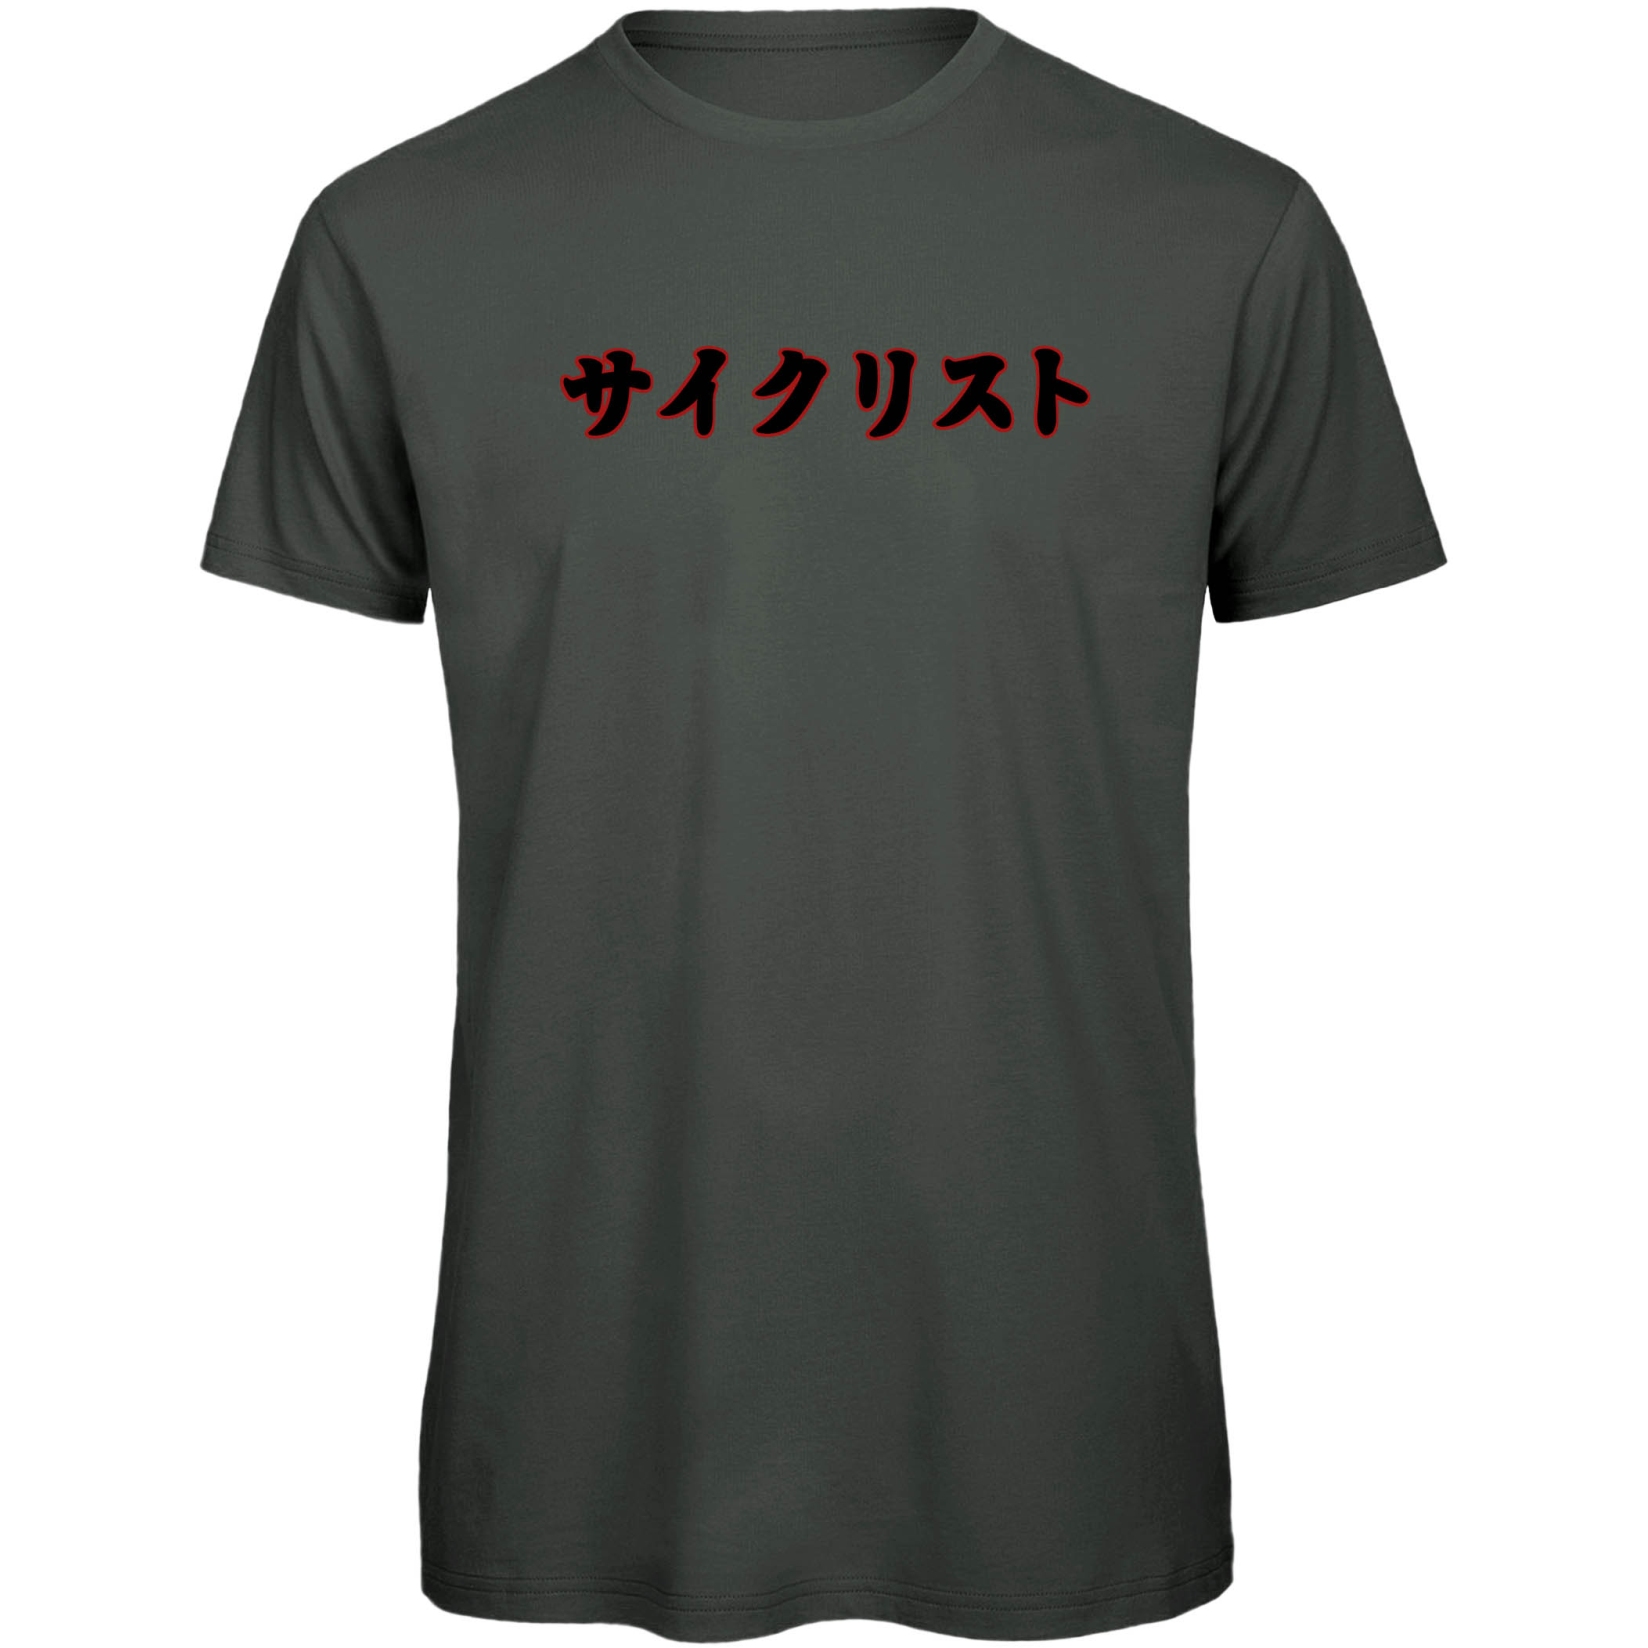 Image of RTTshirts Bike T-Shirt Saikurisuto - dark grey